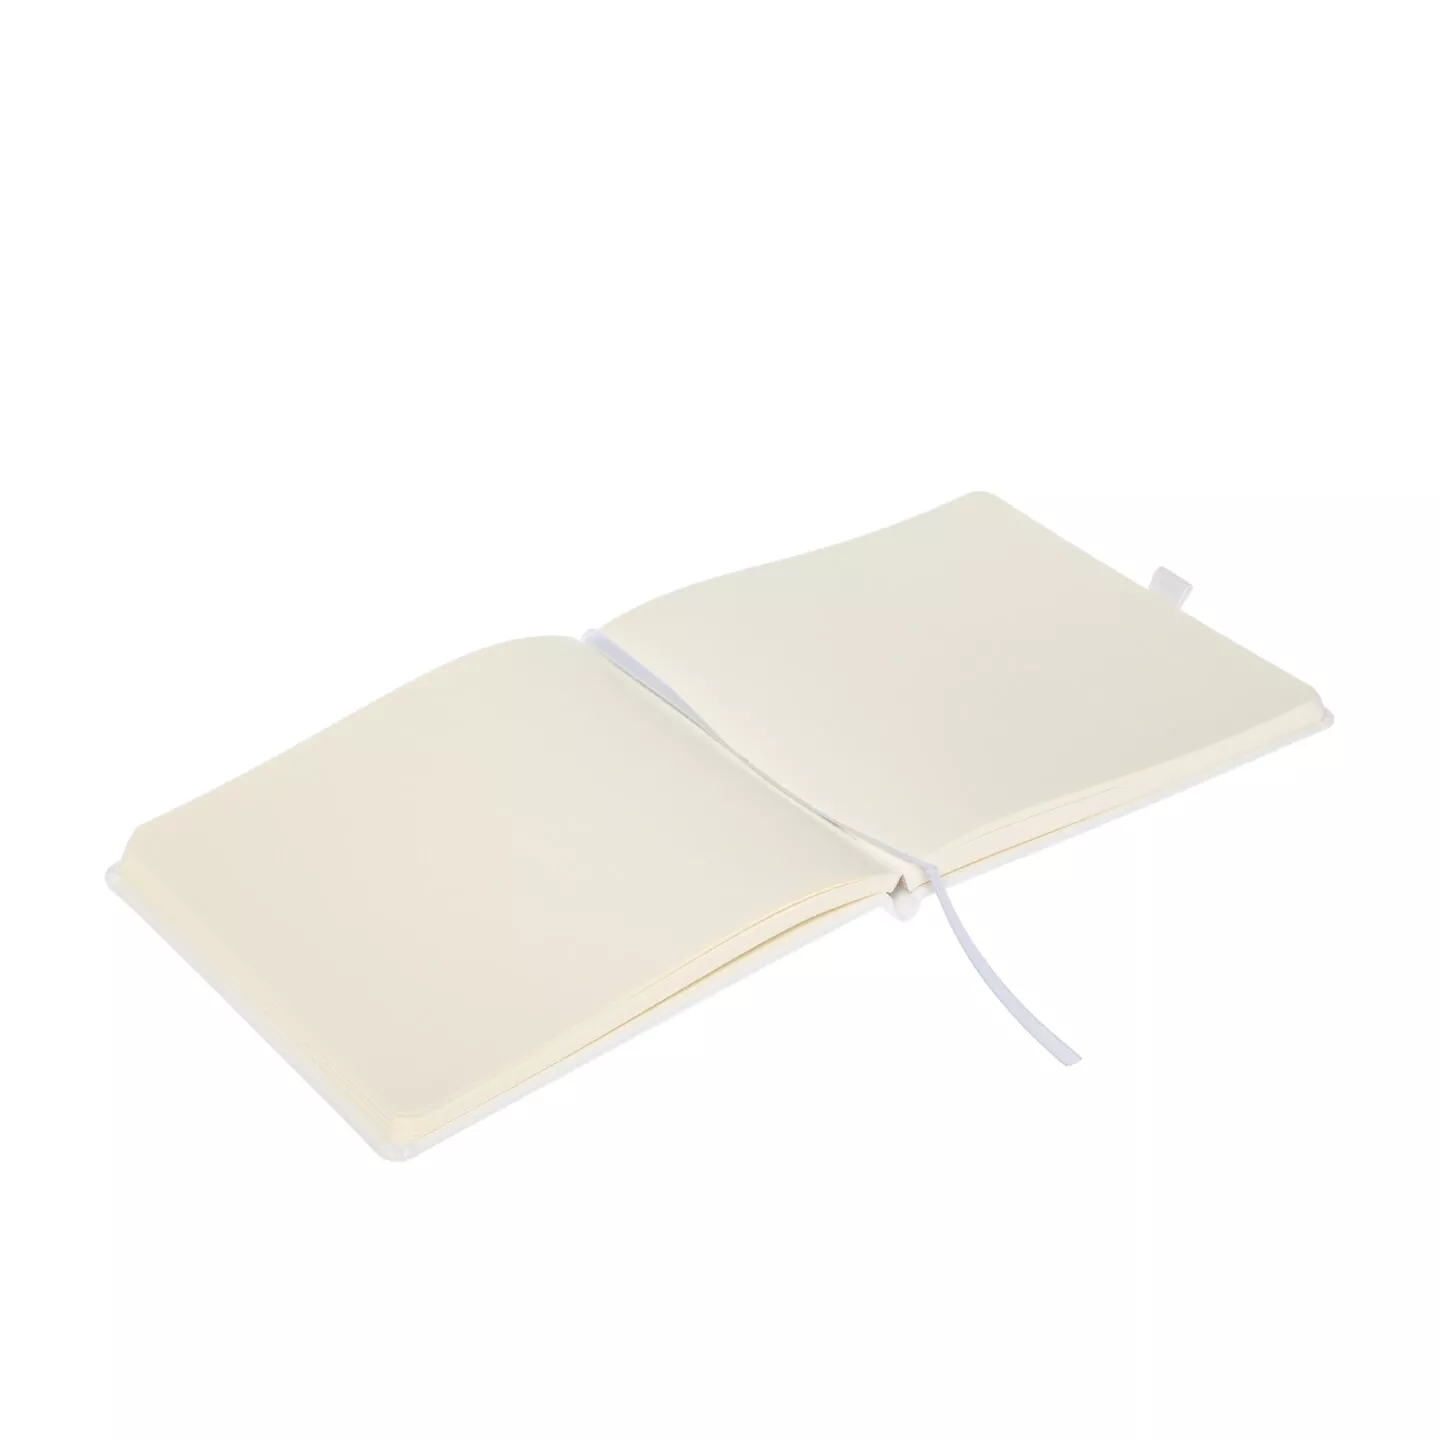 Блокнот для зарисовок Sketchmarker 140г/кв.м 20*20cм 80л (Белый)